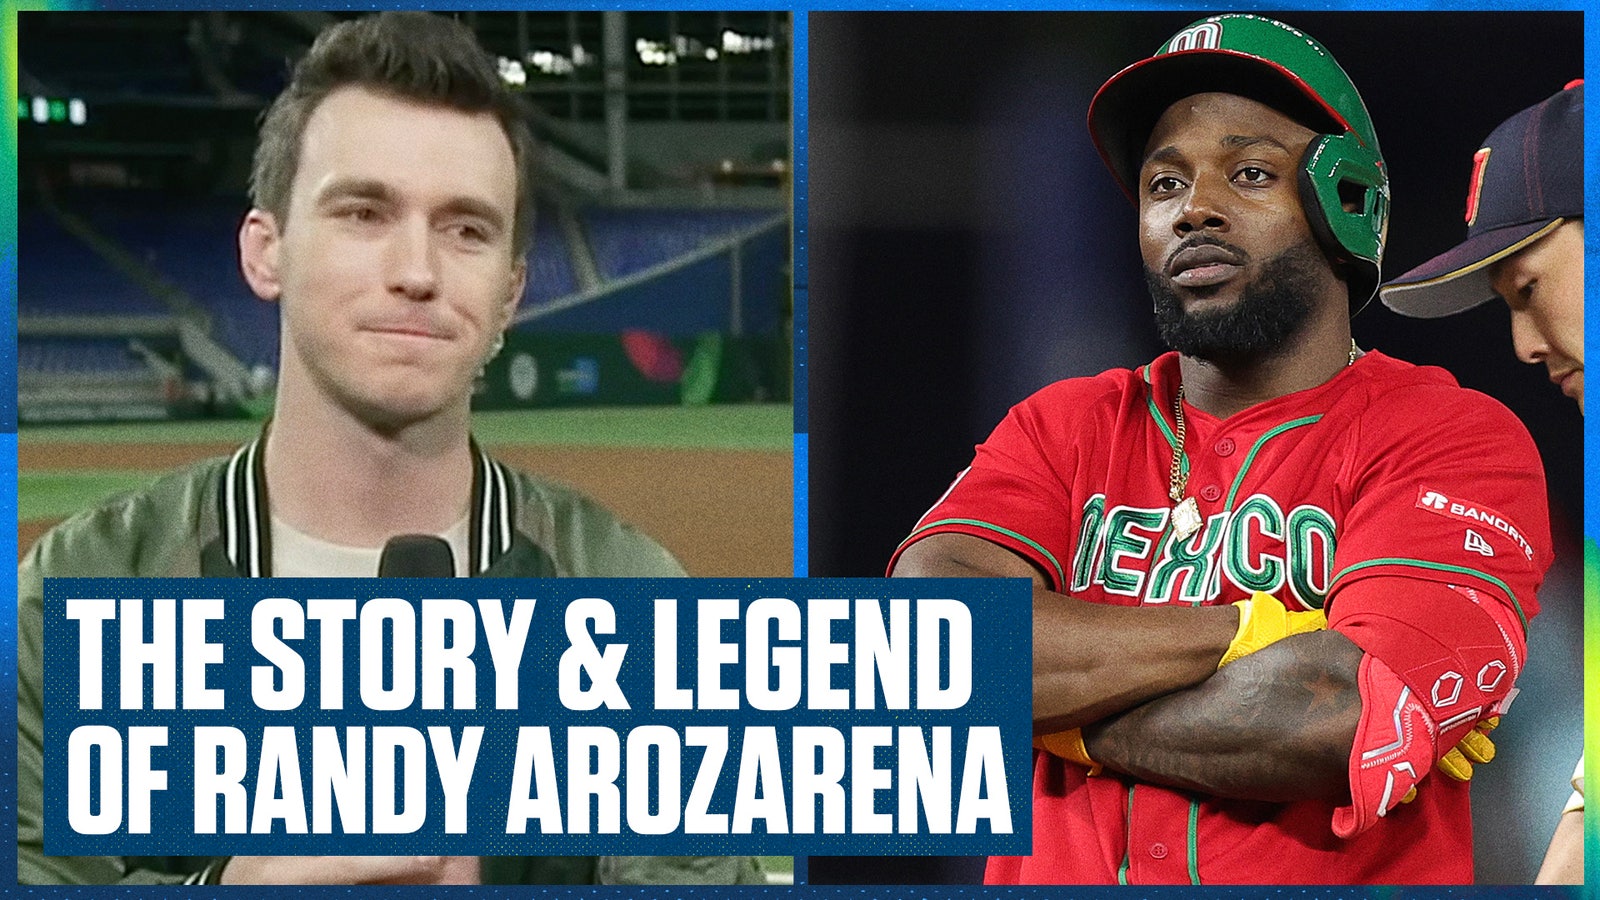 Randy Arozarena WBC oyuncusuydu ama onun hikayesi daha da iyi